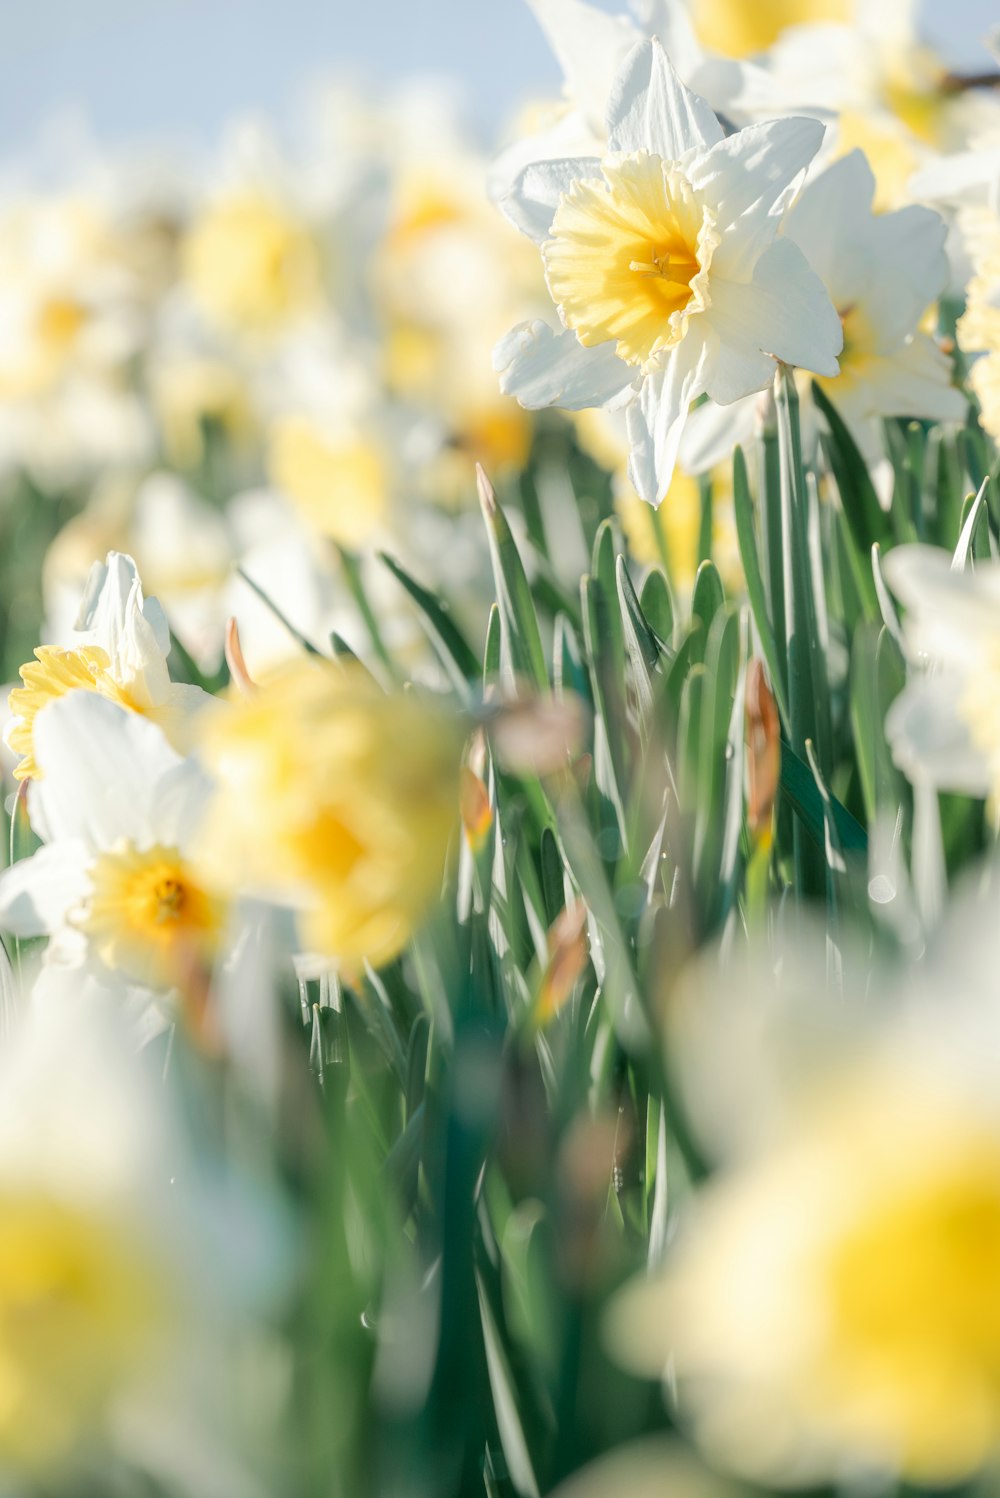 野原に咲く白と黄色の花束